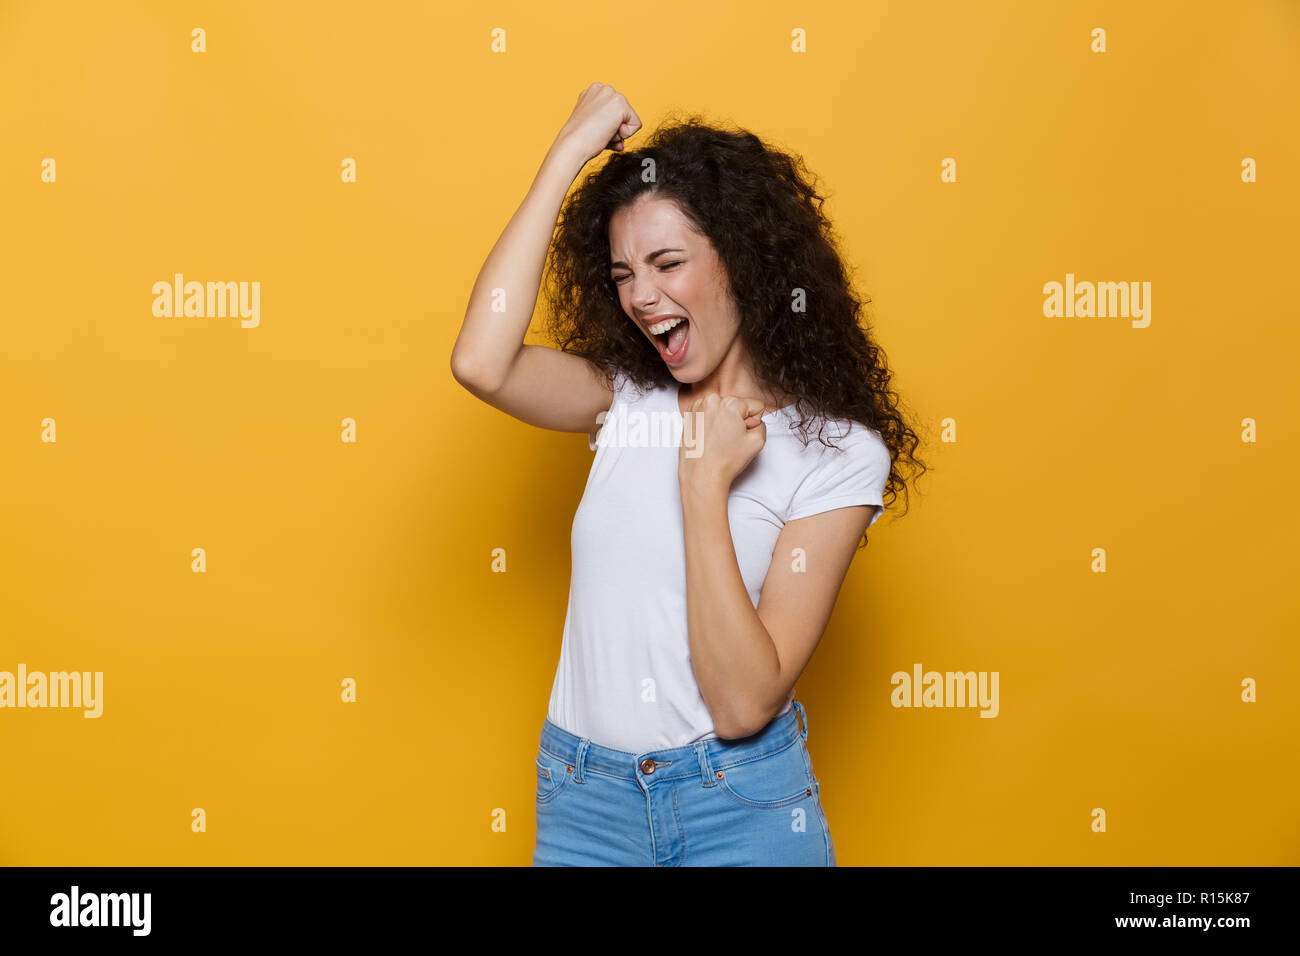 Image de femme joyeuse 20s avec les cheveux bouclés en criant et isolé pebbles sur fond jaune Banque D'Images